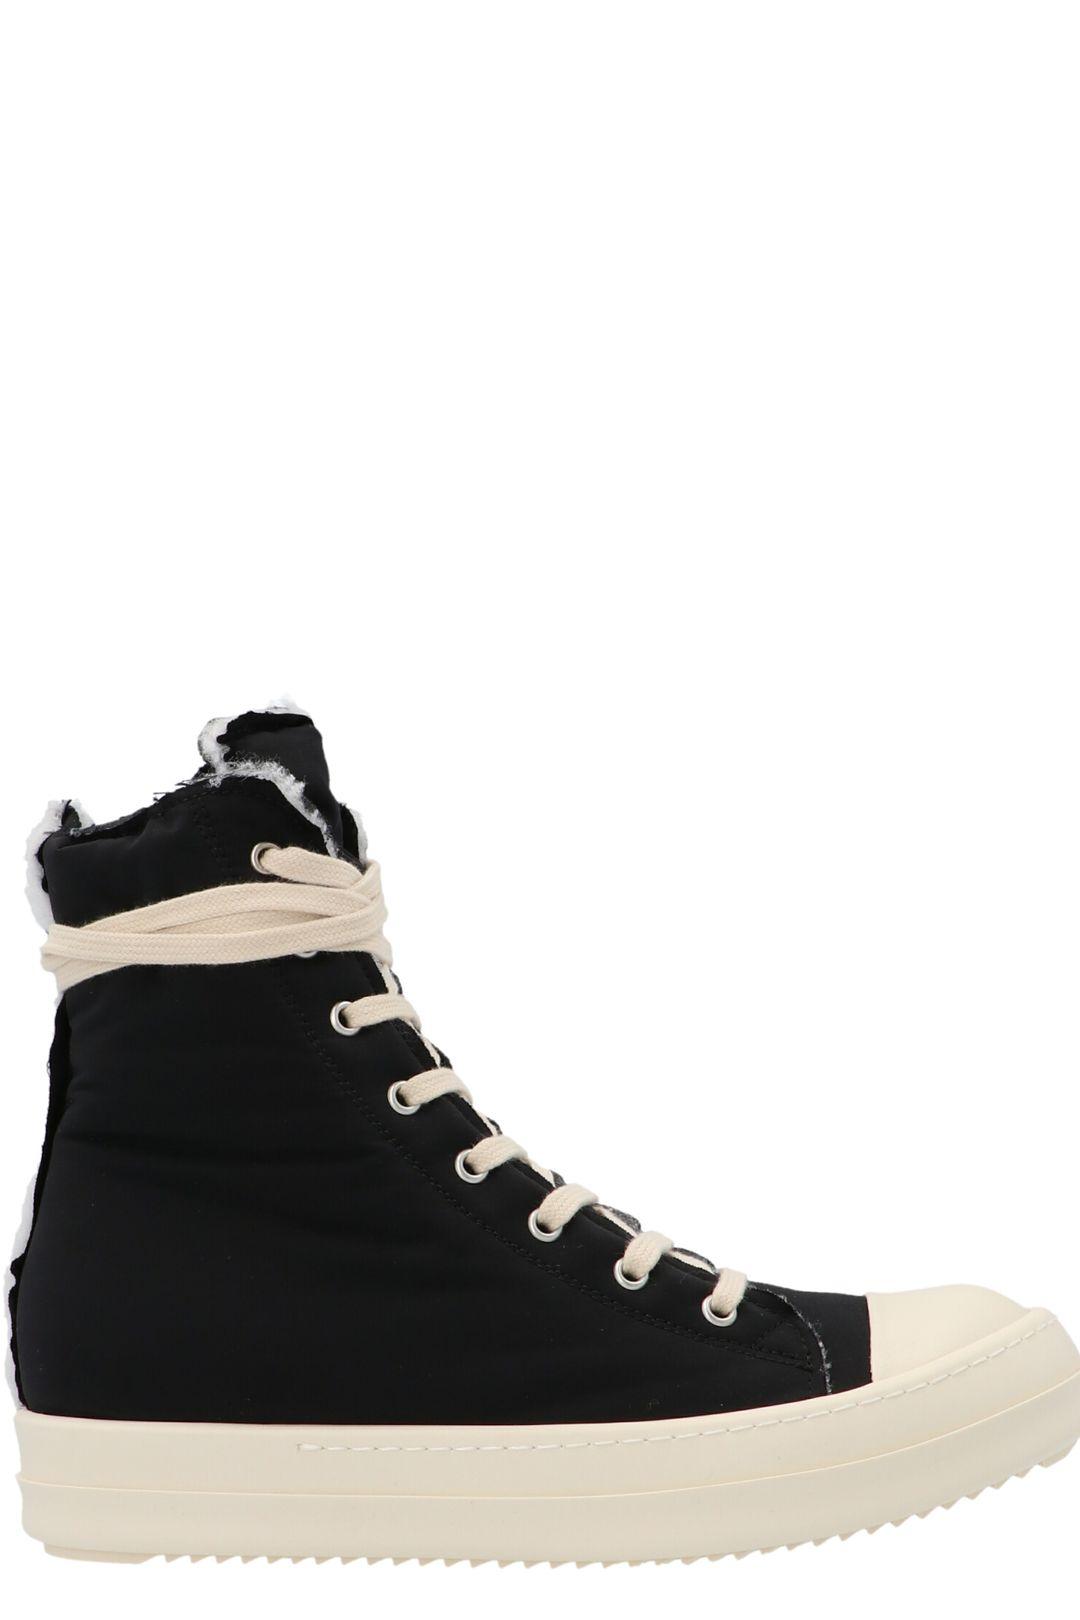 Rick Owens DRKSHDW Gethsemane High-top Sneakers in Black | Lyst